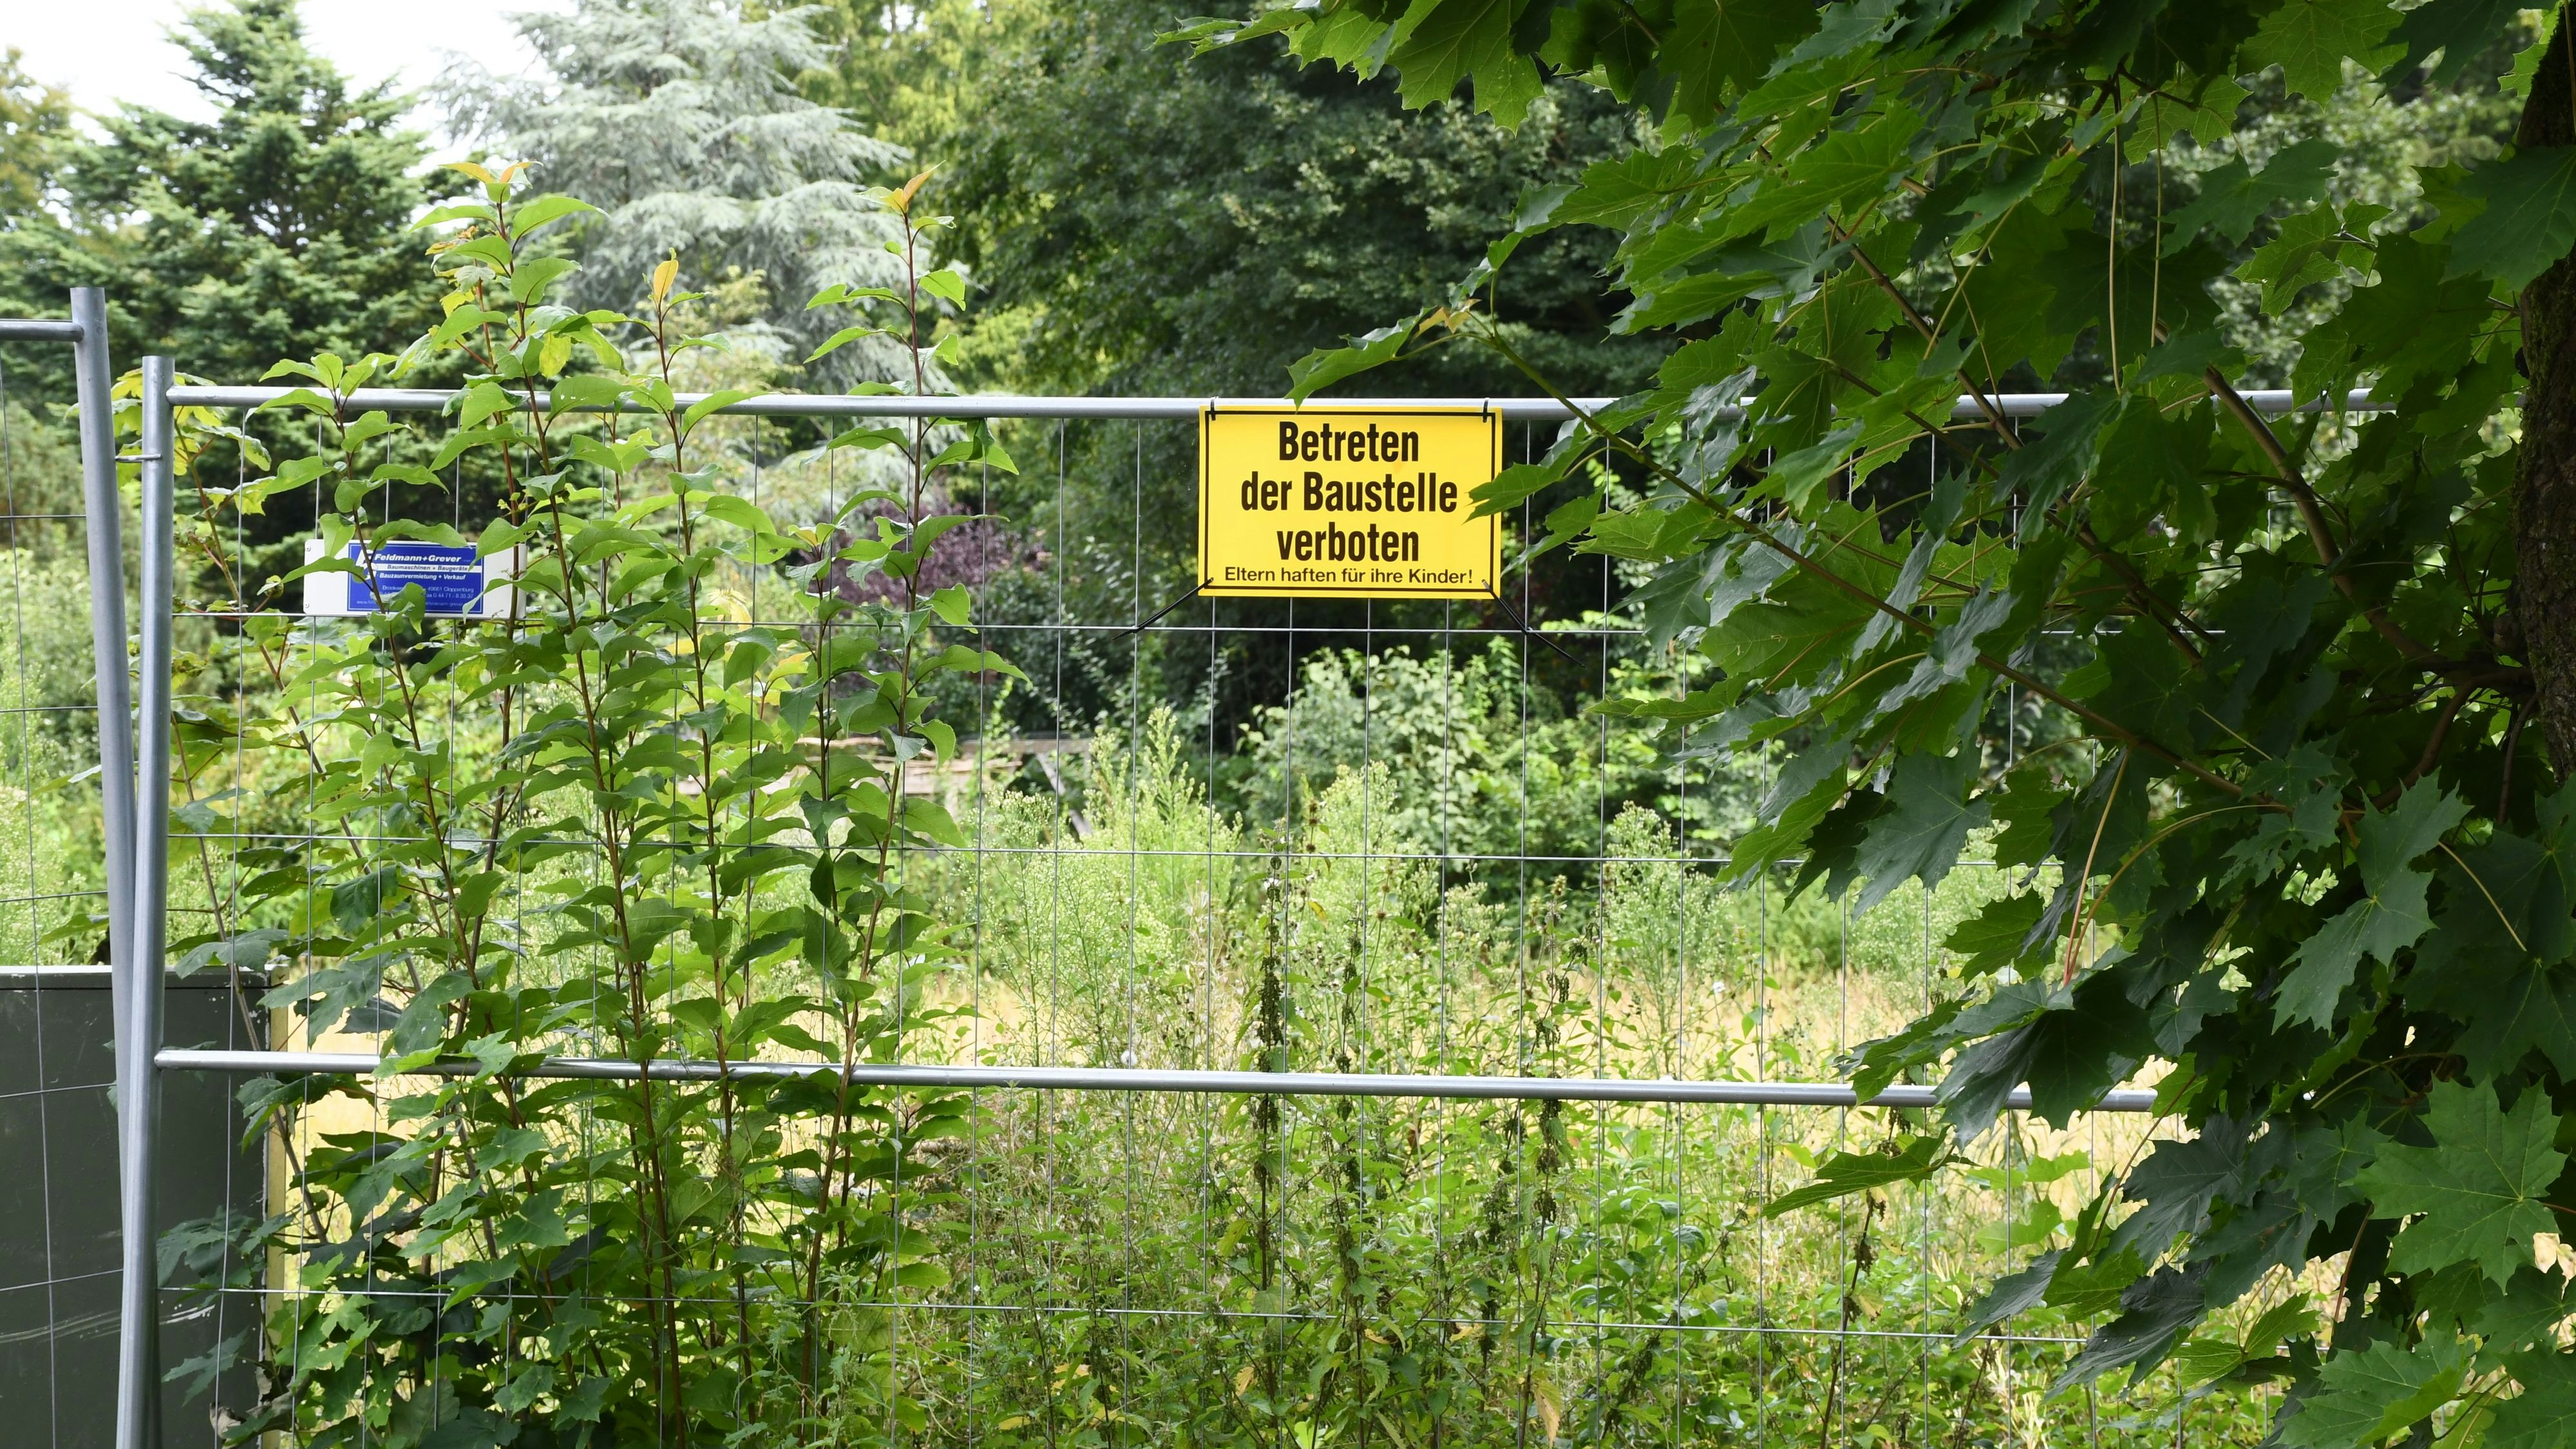 Bauen im Grünen: Die umstrittene Parzelle liegt direkt an der Soeste neben einem idyllischen Wanderweg zum Mühlenteich. Foto: Kreke